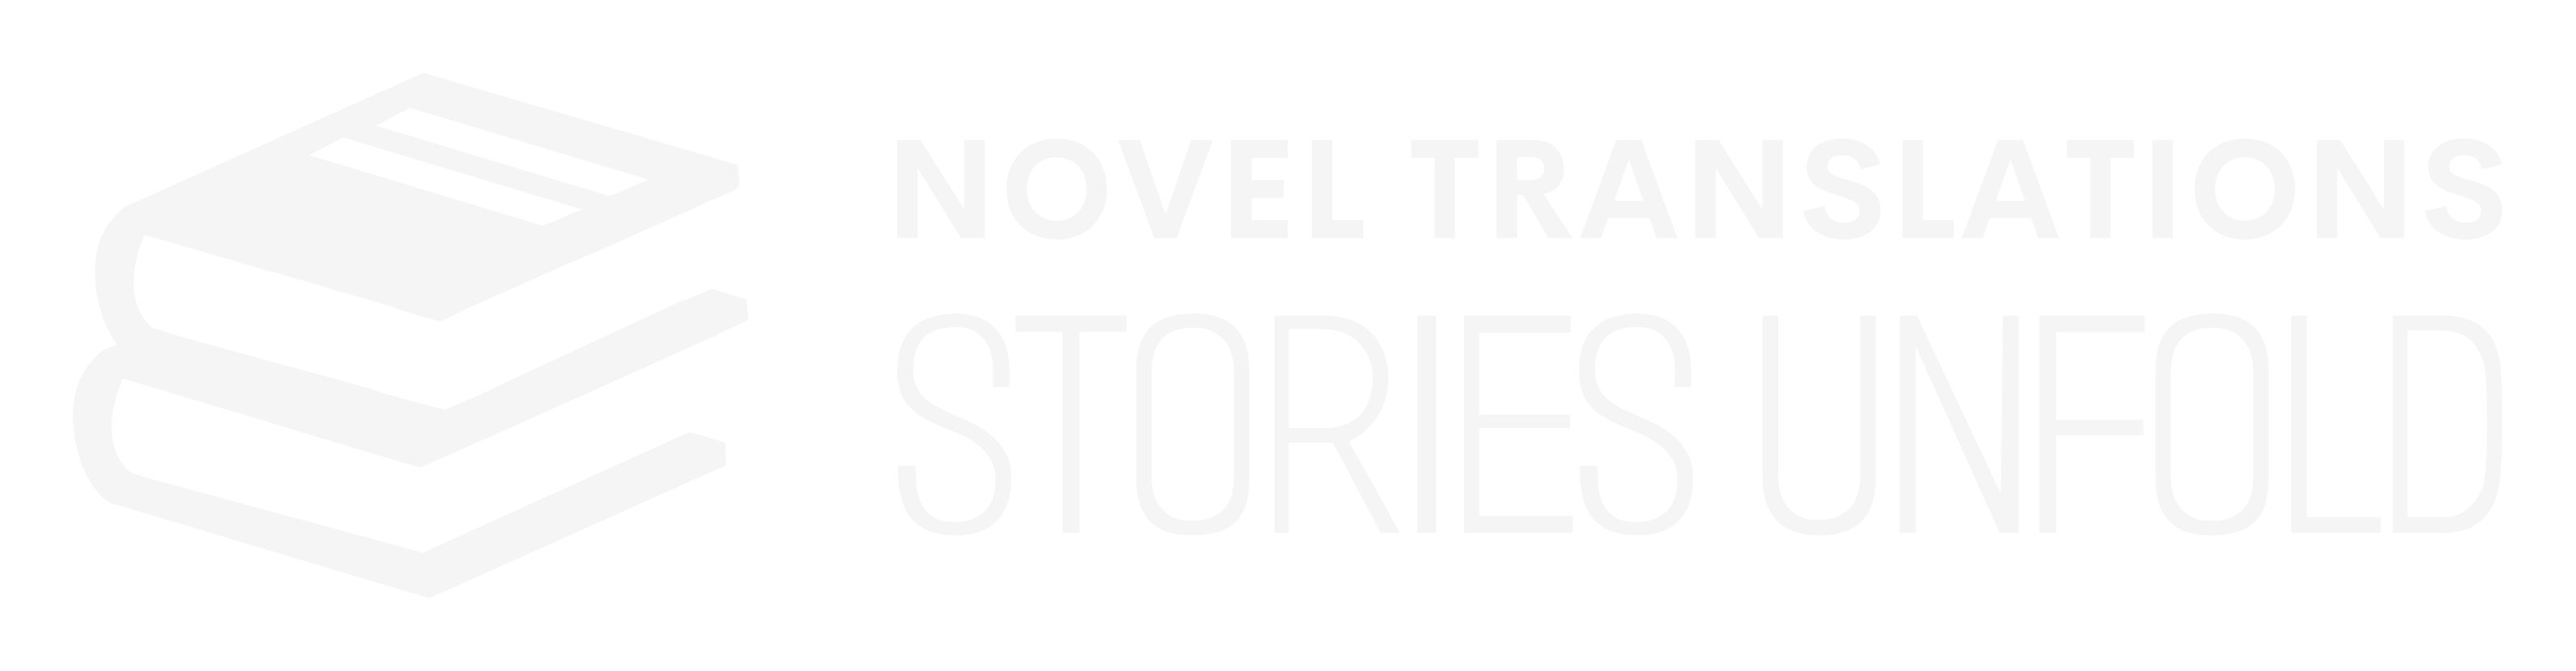 Novel Translations - Stories Unfold